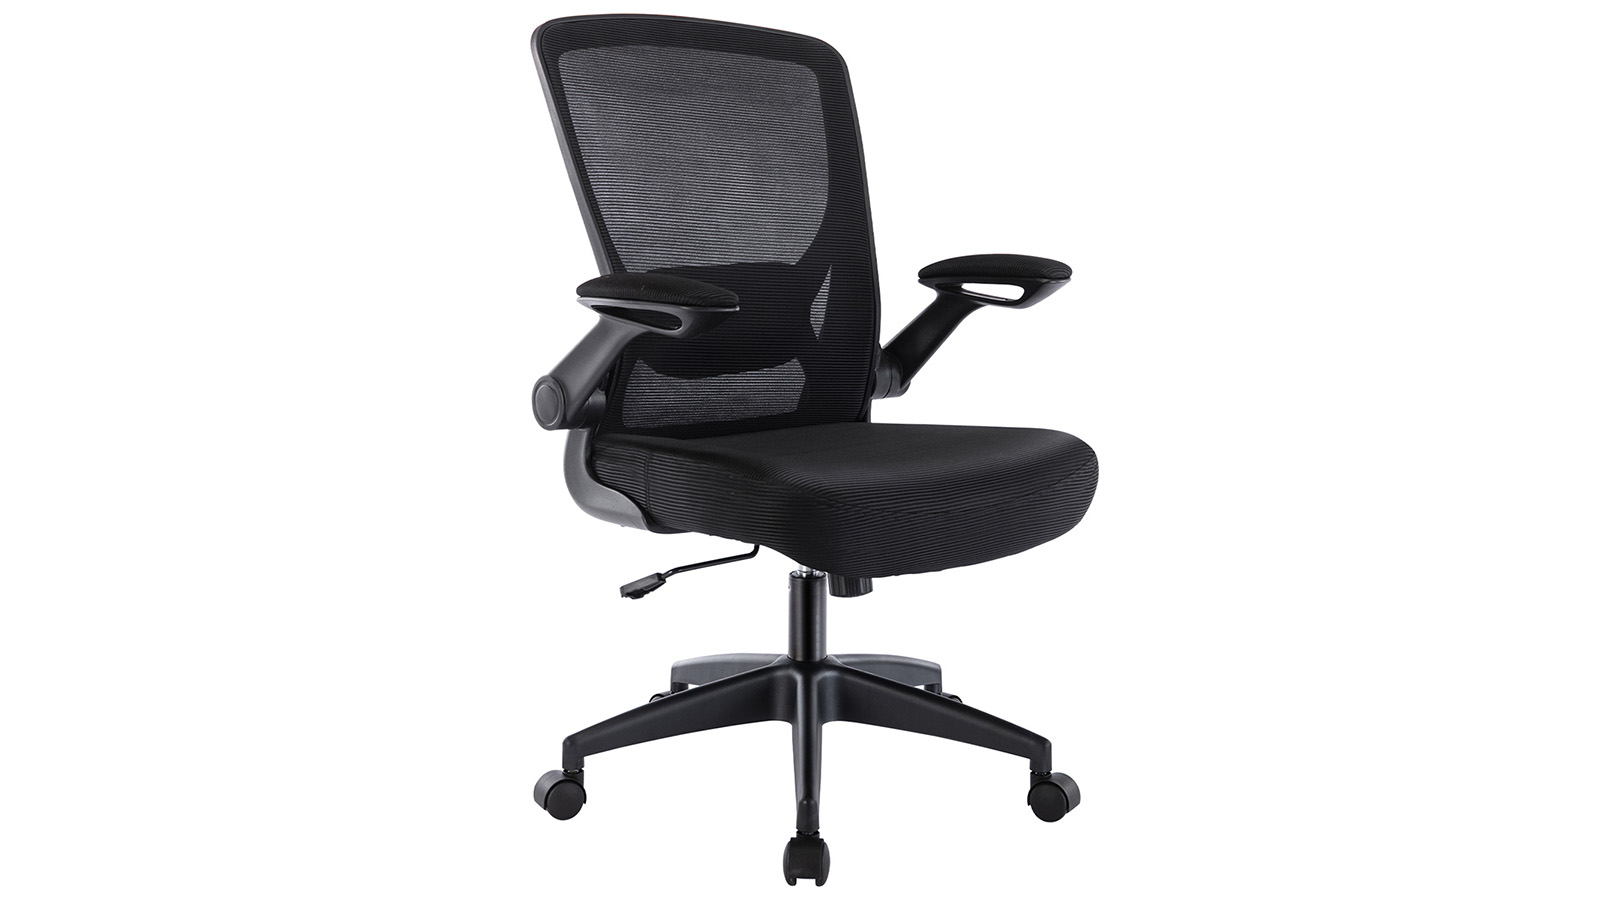 KERDOM Office Chair: Adjustable Armrests